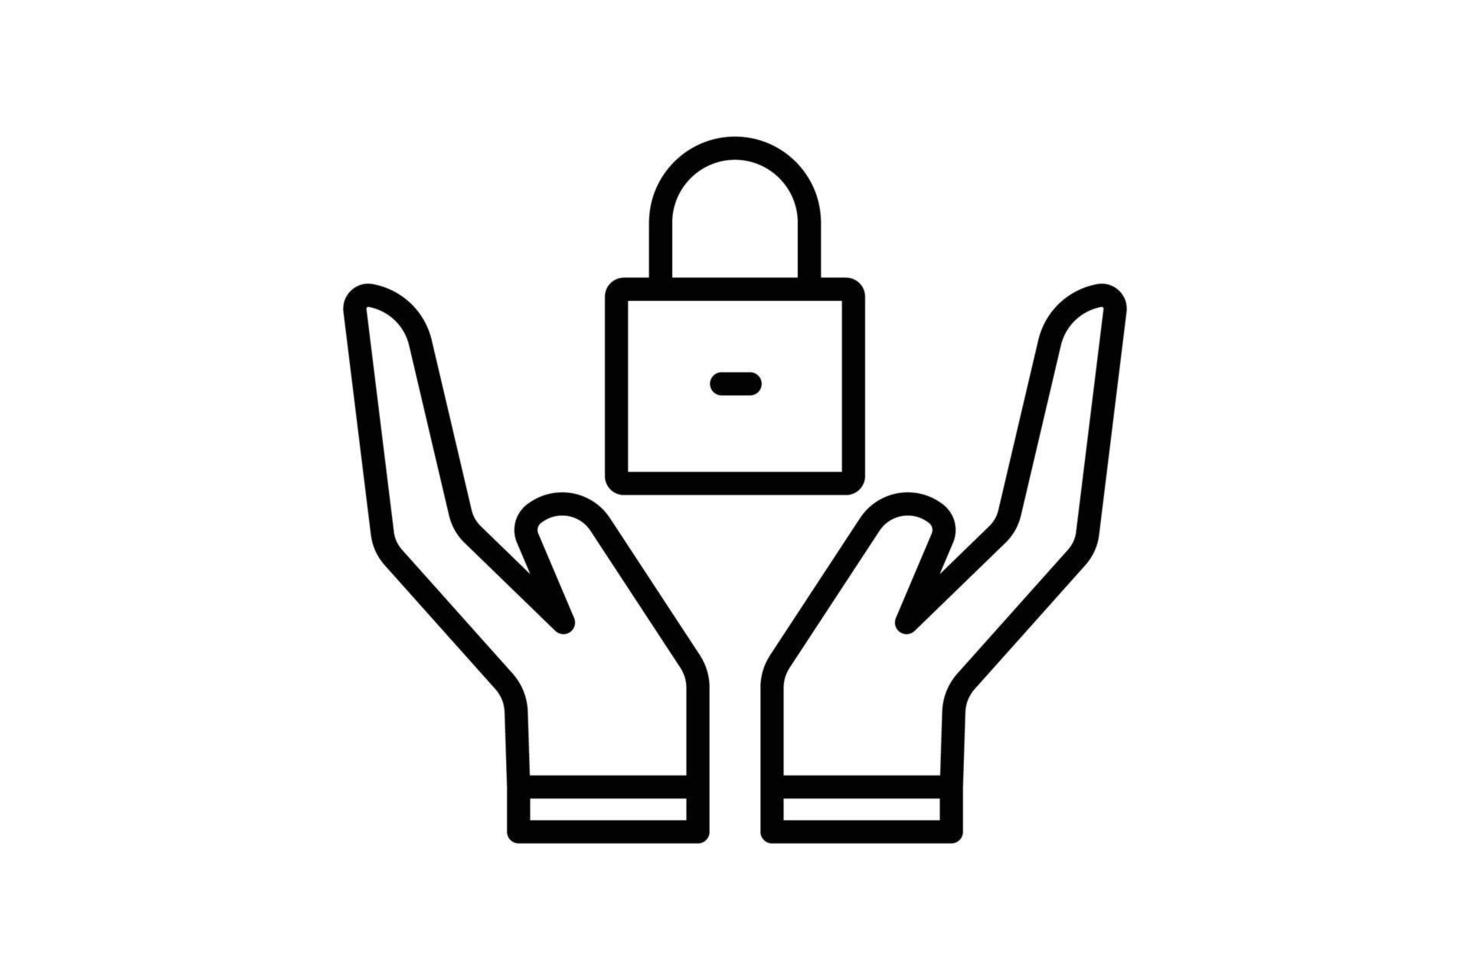 illustration d'icône de sécurité. icône de la main avec cadenas. icône liée à la protection. style d'icône de ligne. conception de vecteur simple modifiable